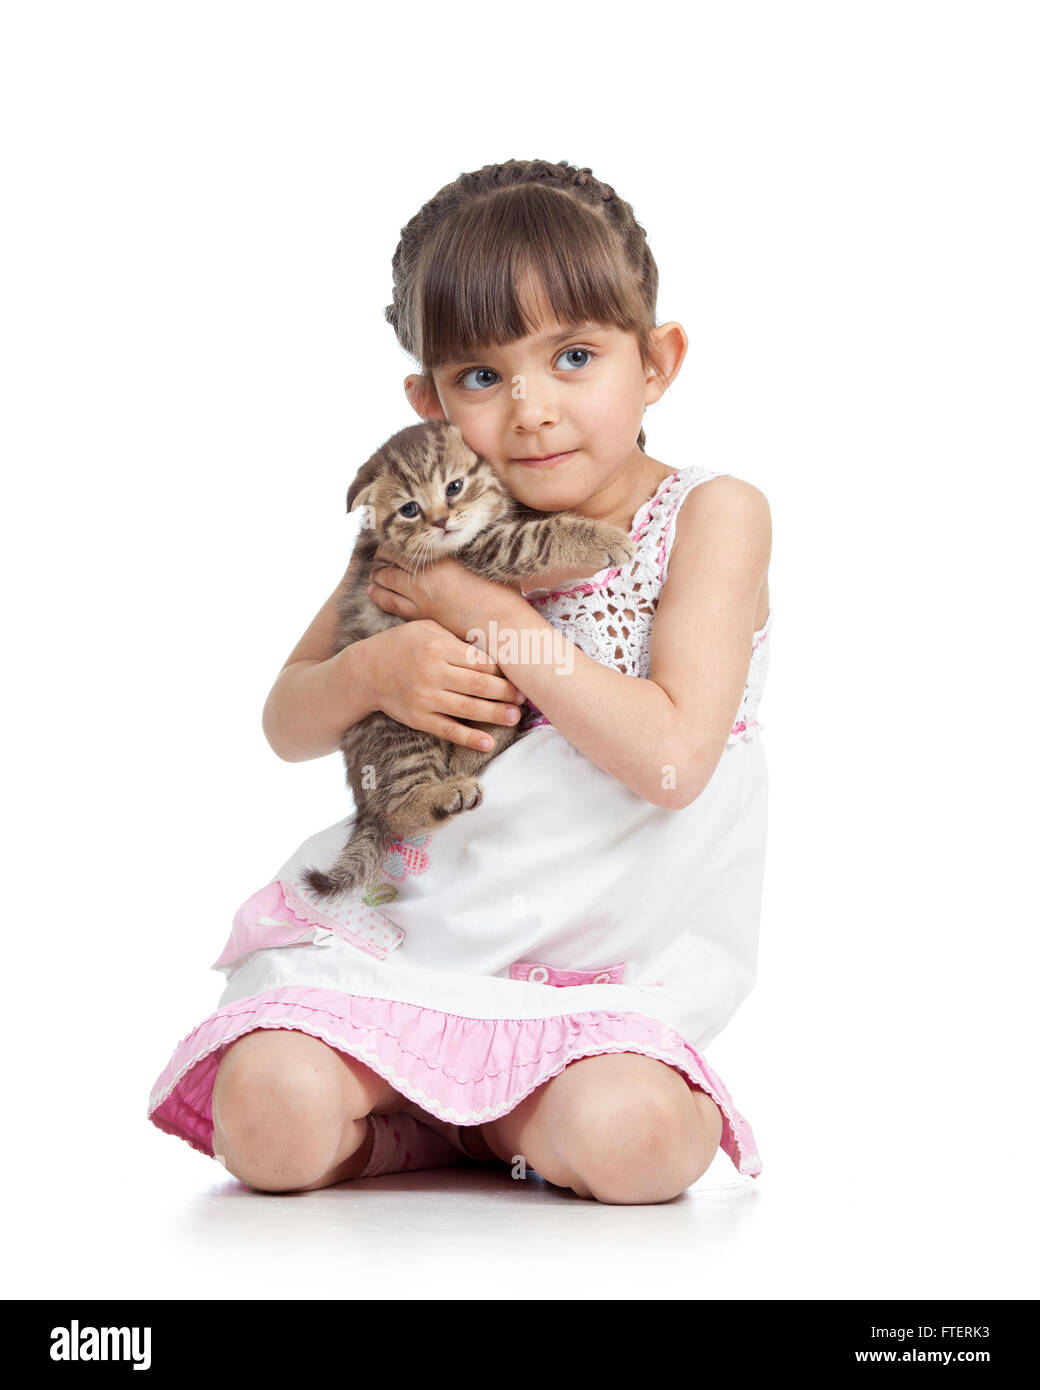 Child little girl hugging kitten. isolated on white background Stock Photo